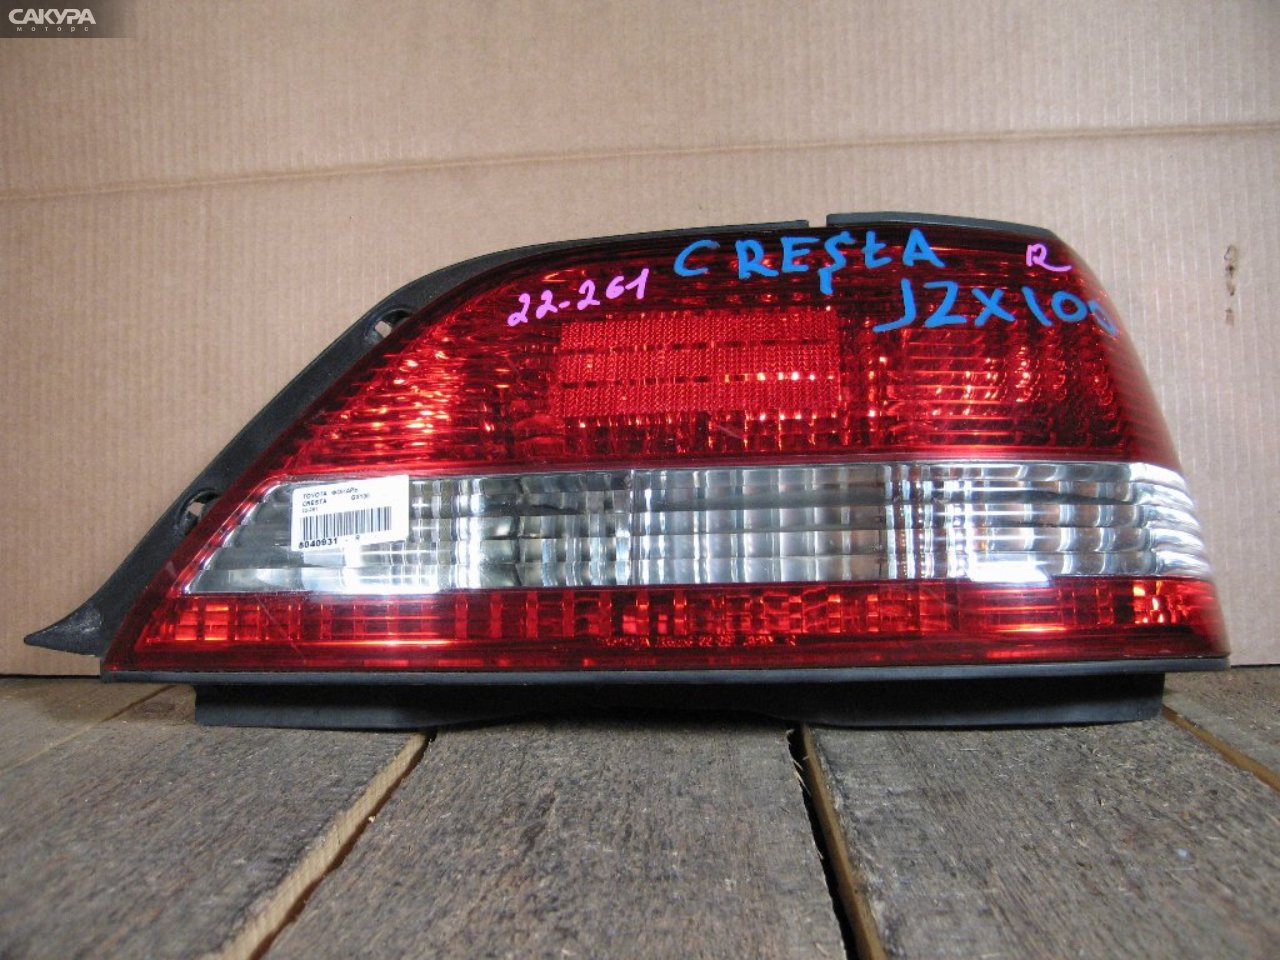 Фонарь стоп-сигнала правый Toyota Cresta GX100 22-261: купить в Сакура Абакан.